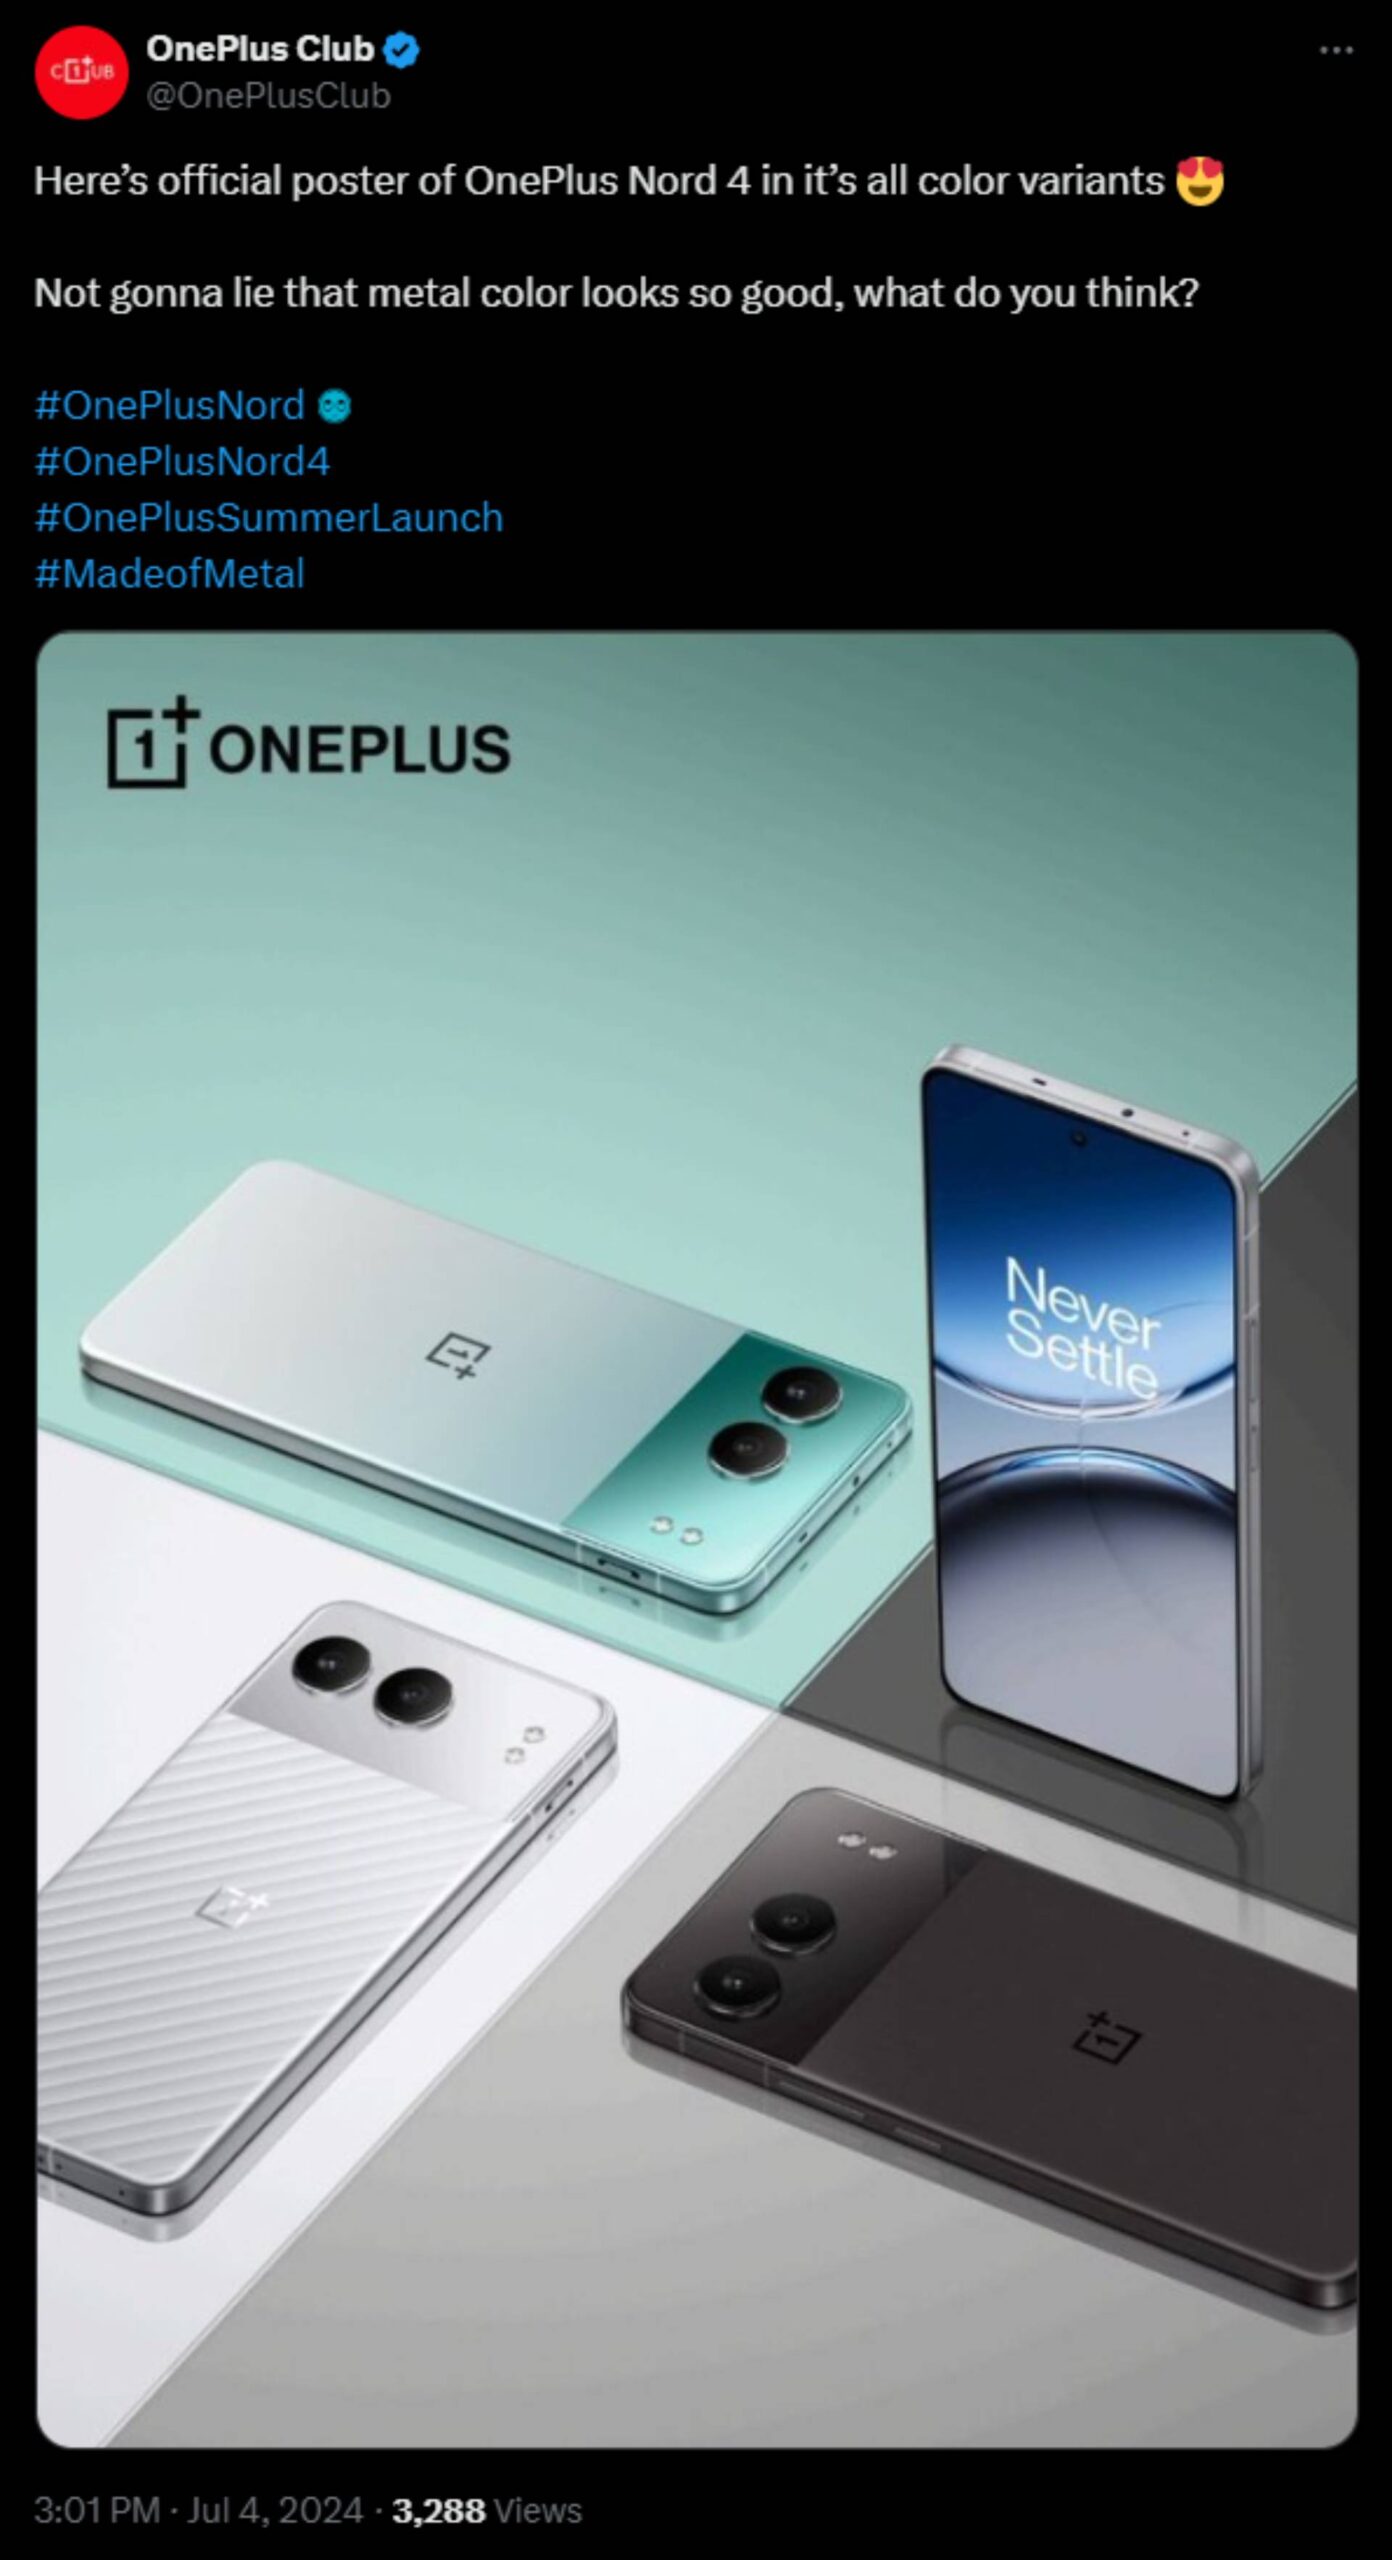 Zrzut ekranu X OnePlus Club po zaprezentowaniu OnePlus Nord 4.